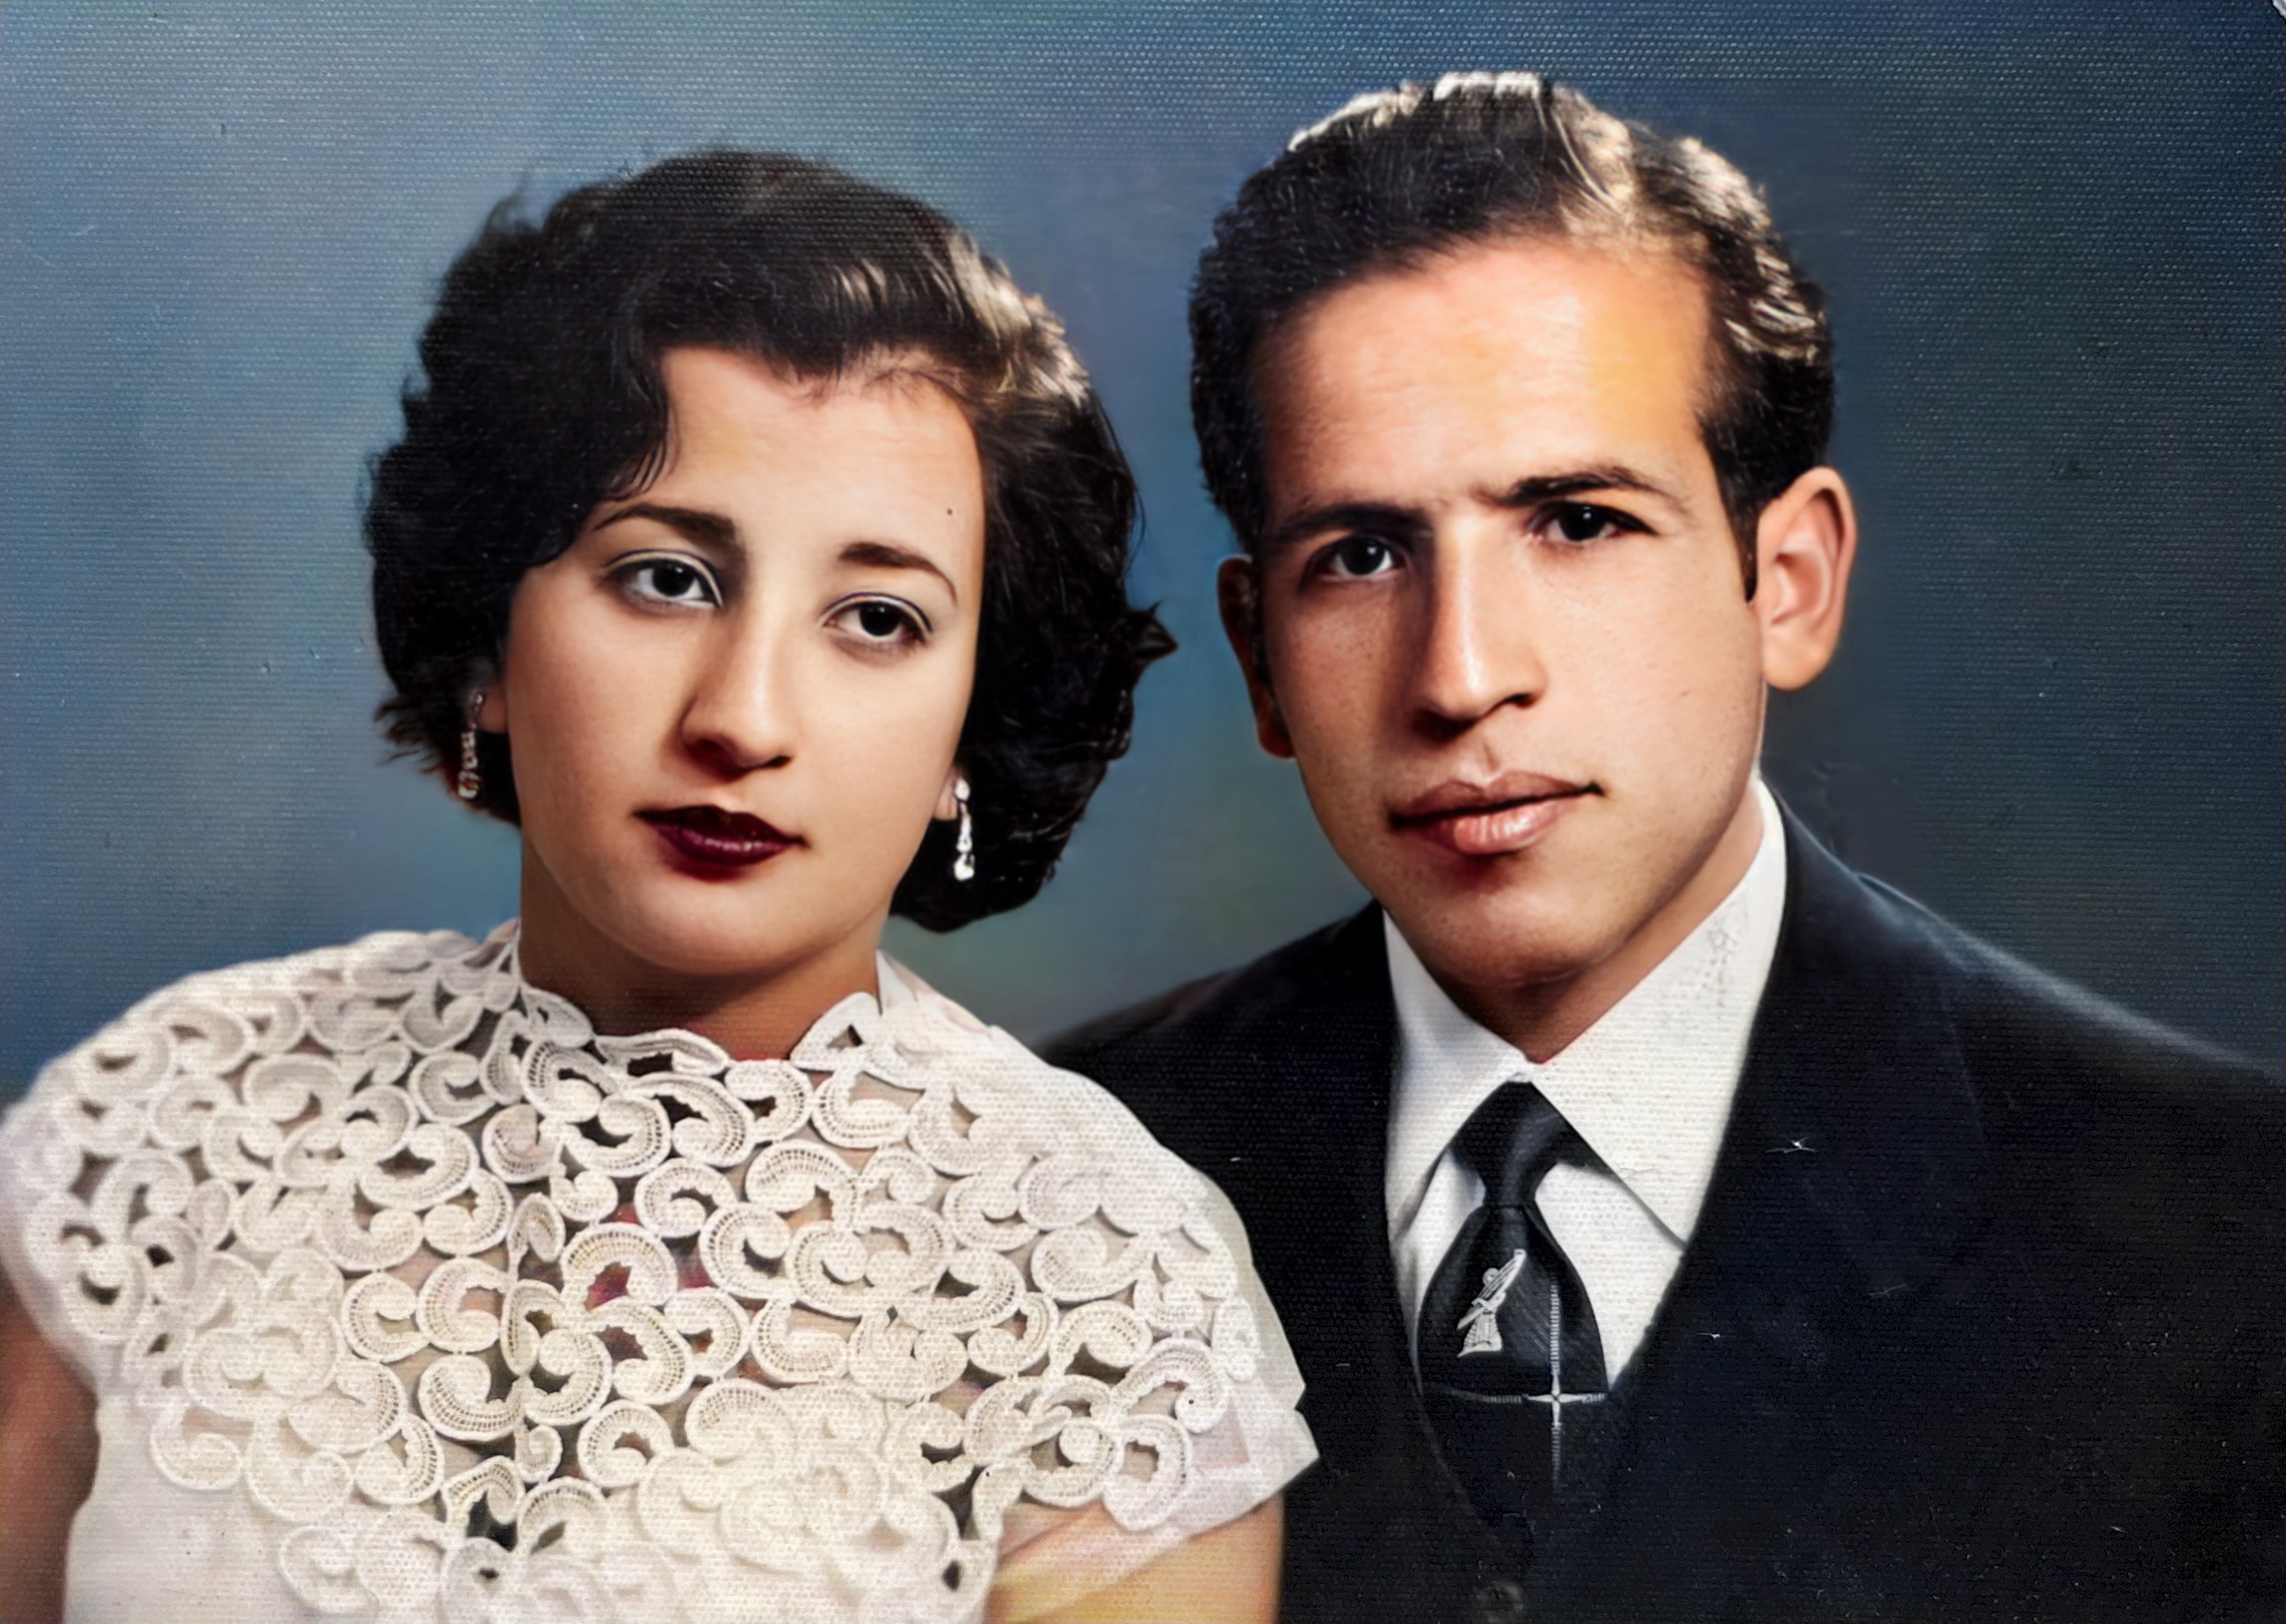 Grandpa and Grandma in 1945 in Iran